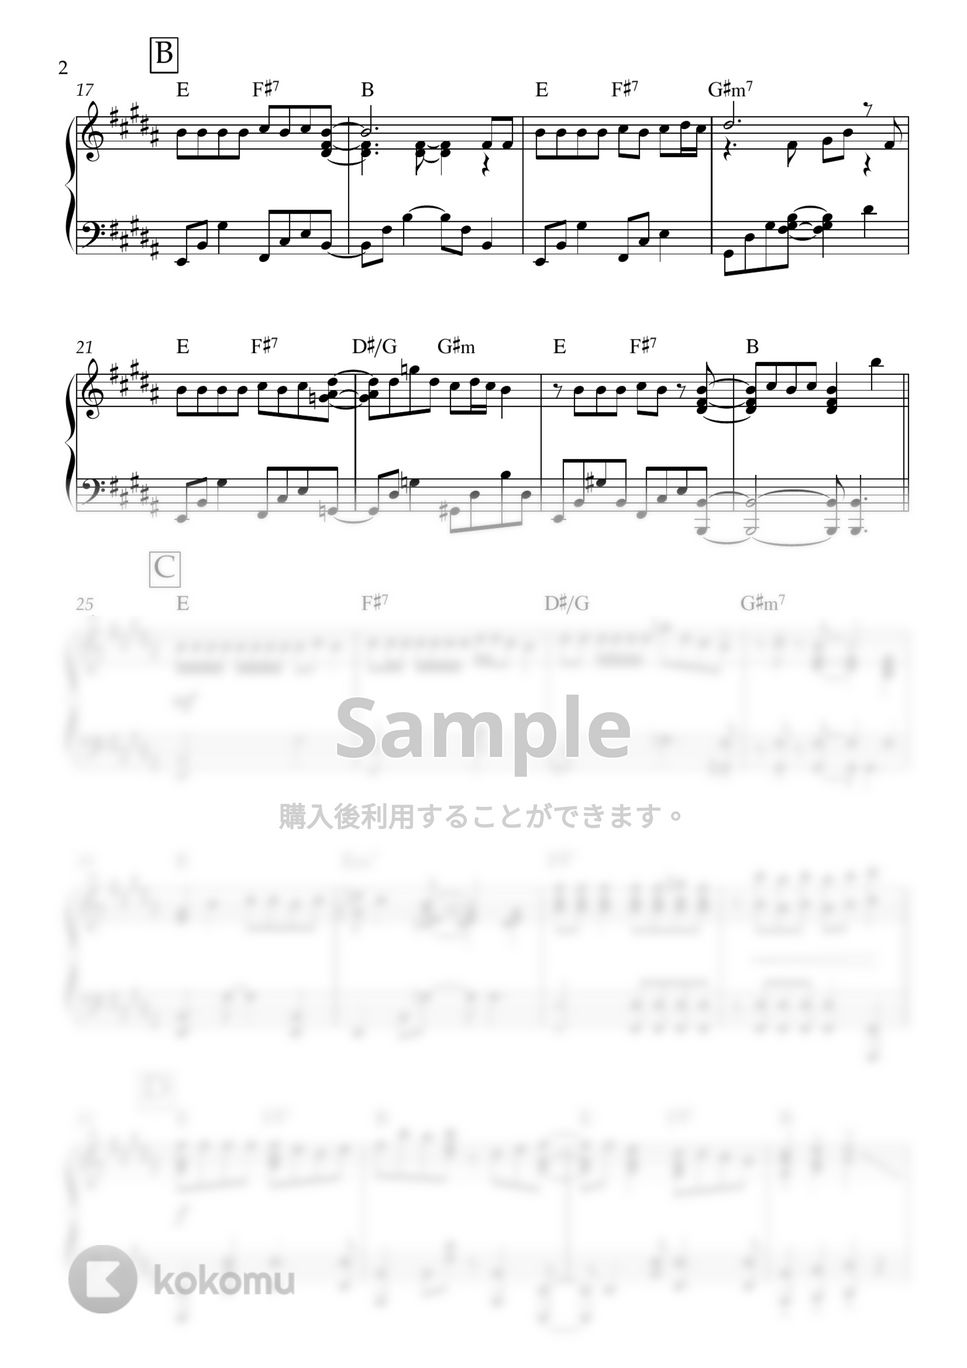 星乃夢奈 - 男の子のために可愛いわけじゃない！ (ピアノ/星乃夢奈) by ヒット